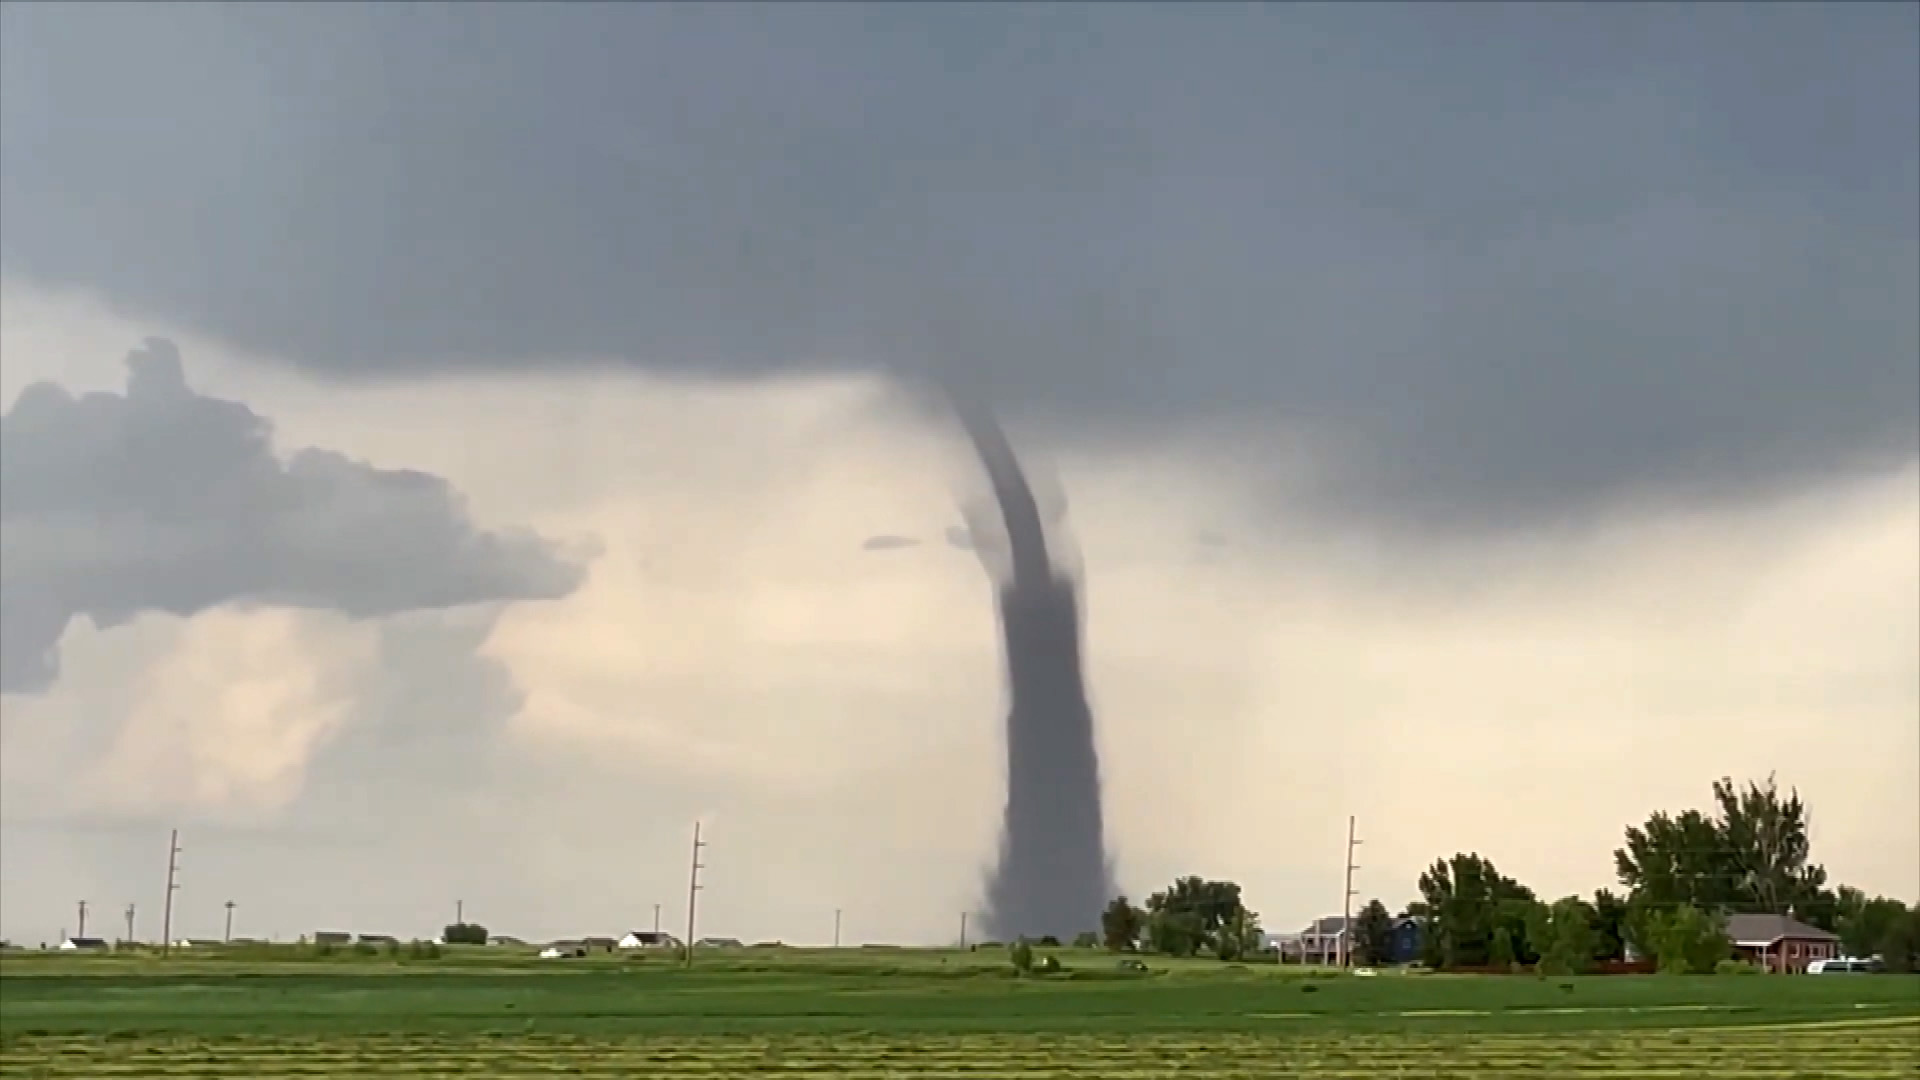 Unusual landspout tornado touches down in Colorado